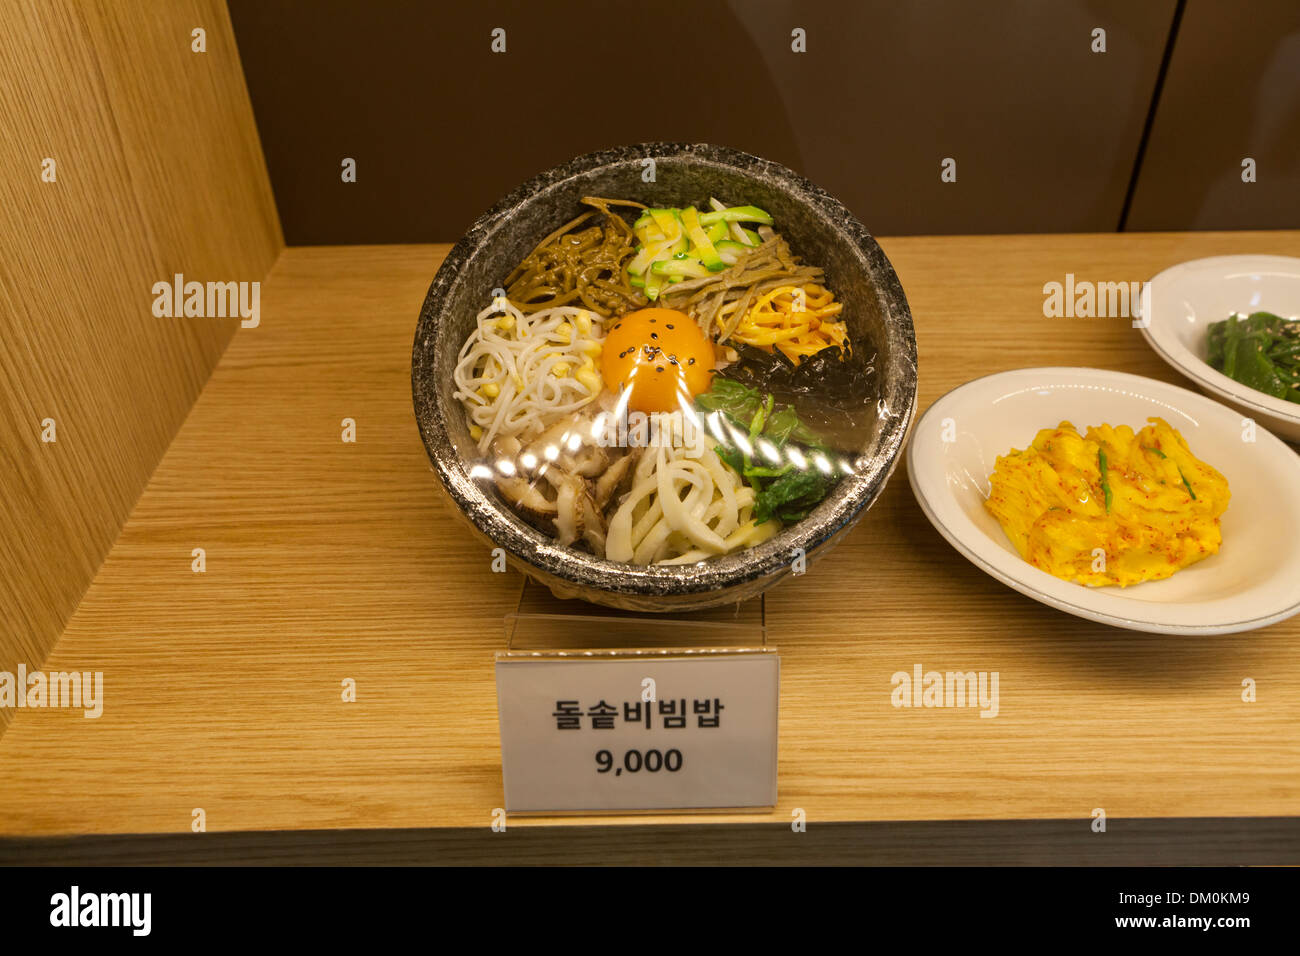 Modèle en plastique (bibimbap - les légumes sur riz) vitrine à fast food restaurant - Séoul, Corée du Sud Banque D'Images